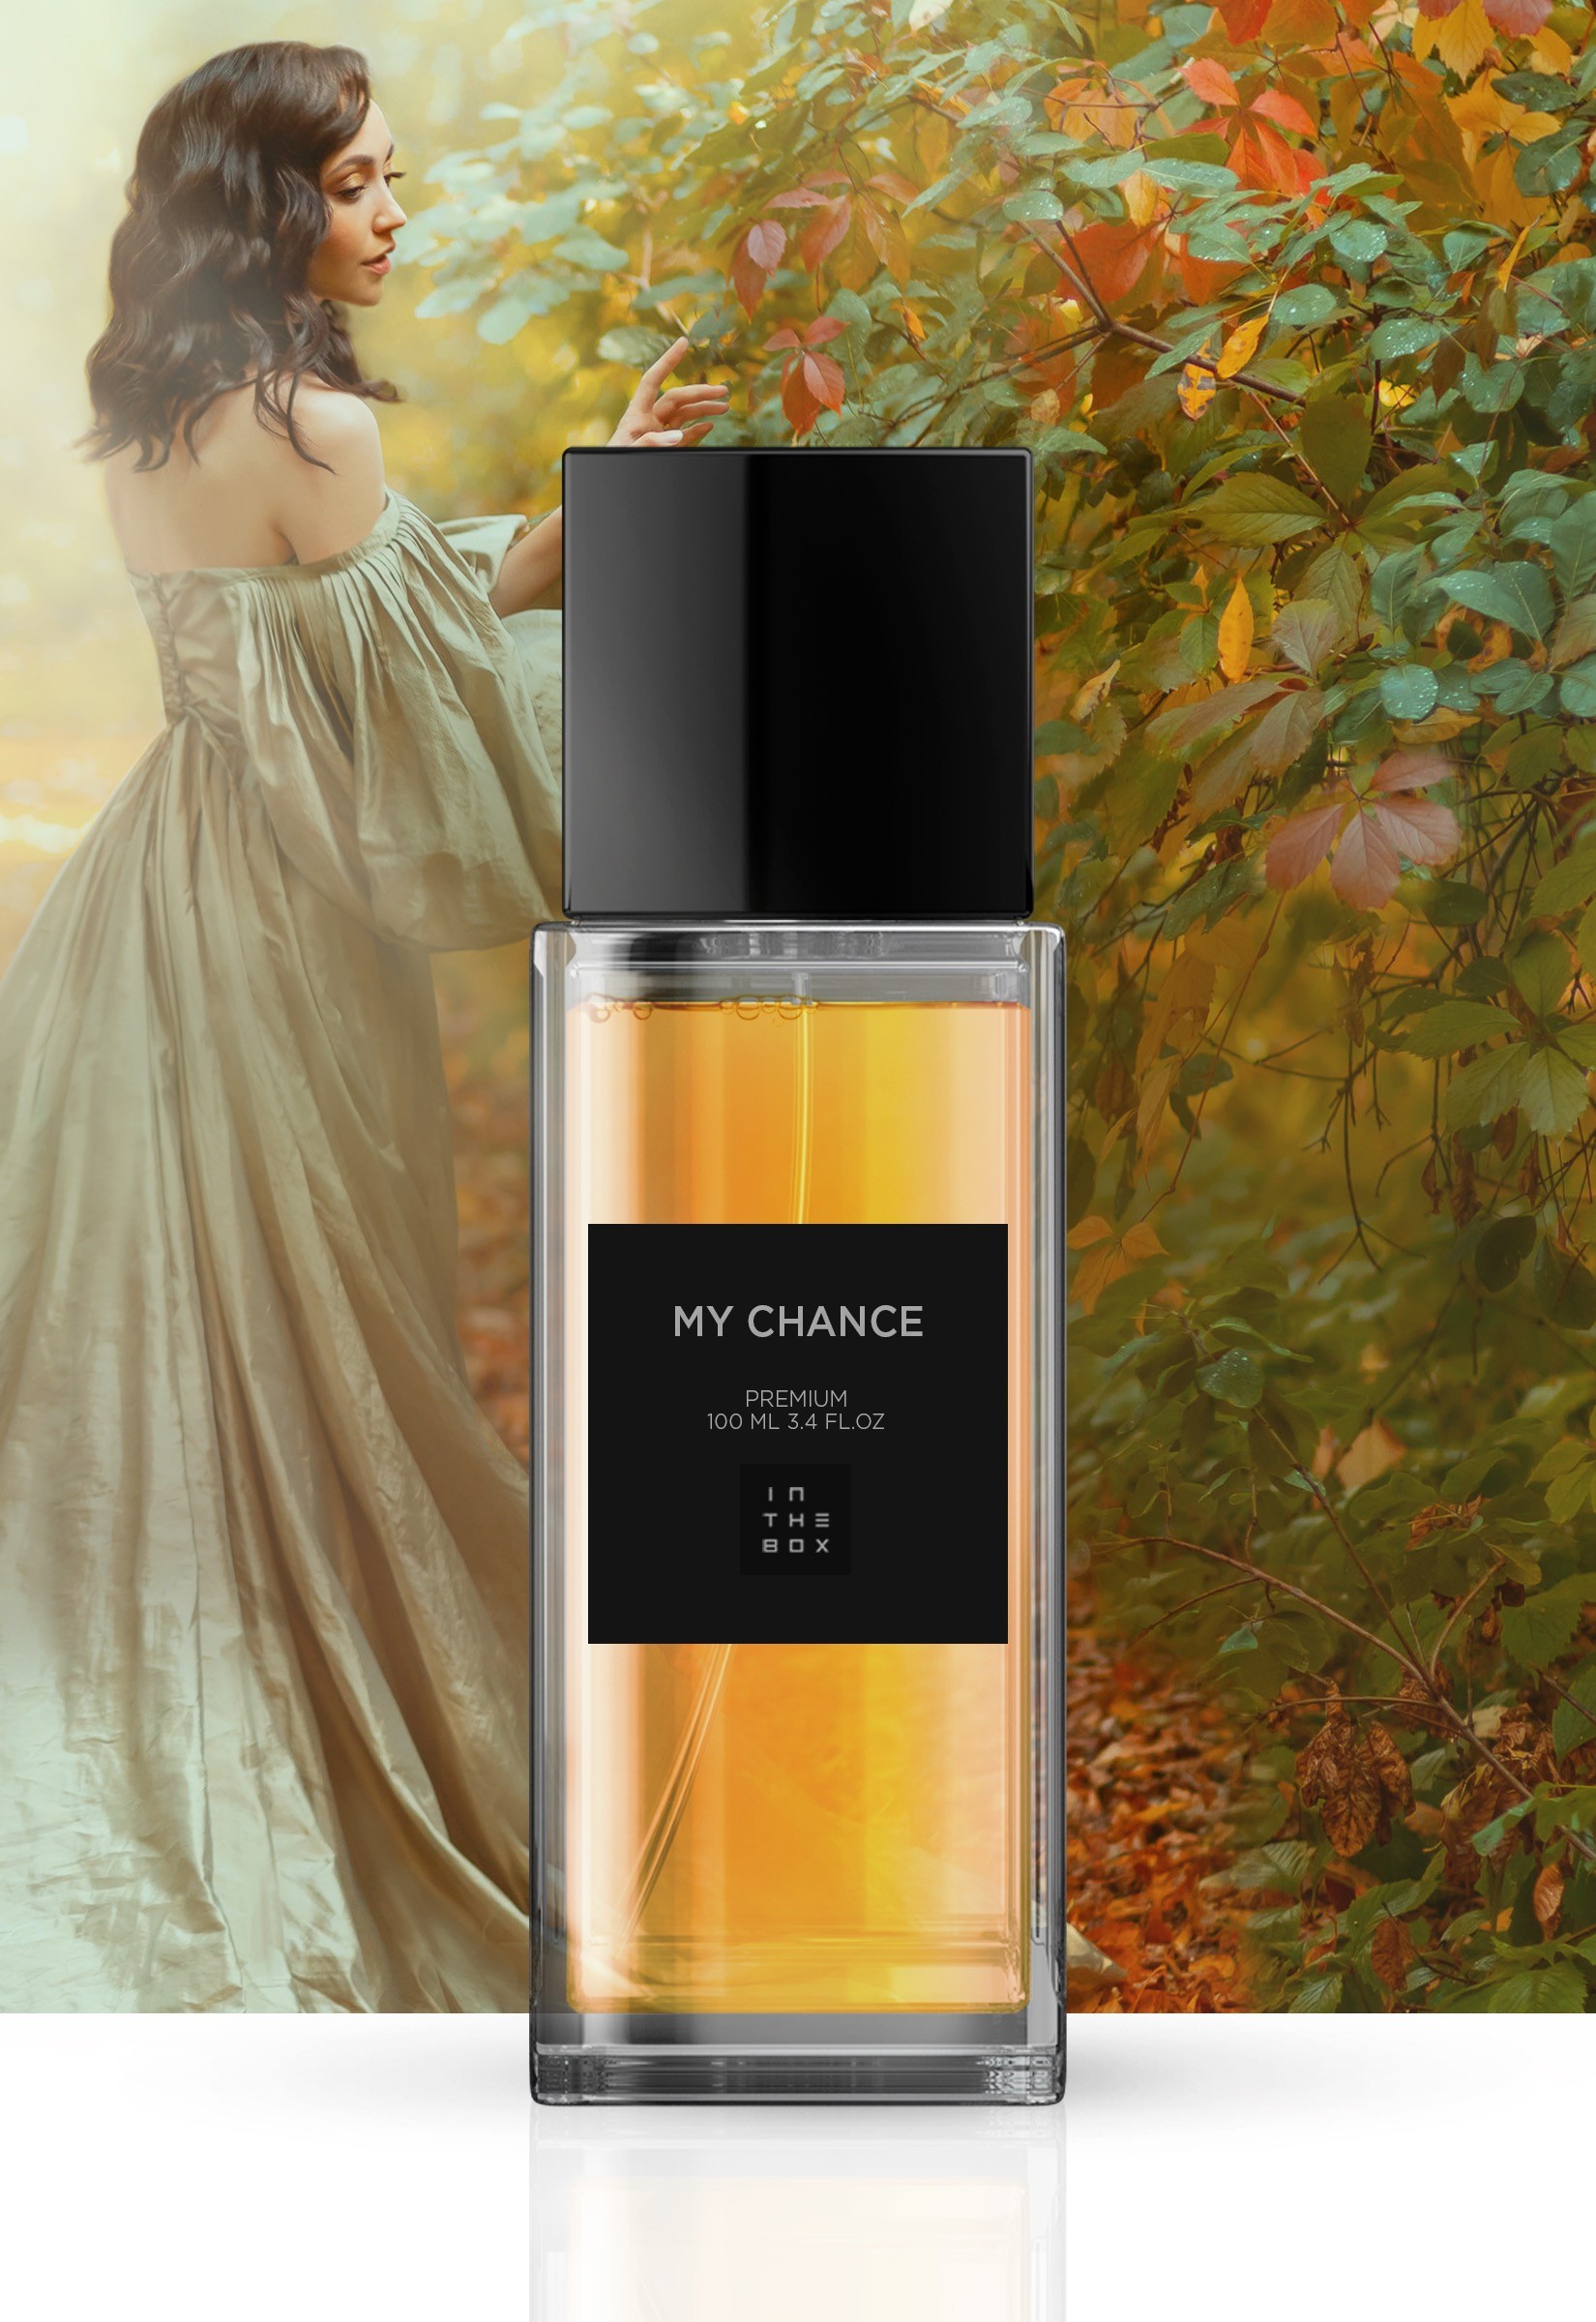 Comprar Perfume Feminino Chanel Nº5 - 100ml - Eau de Parfum